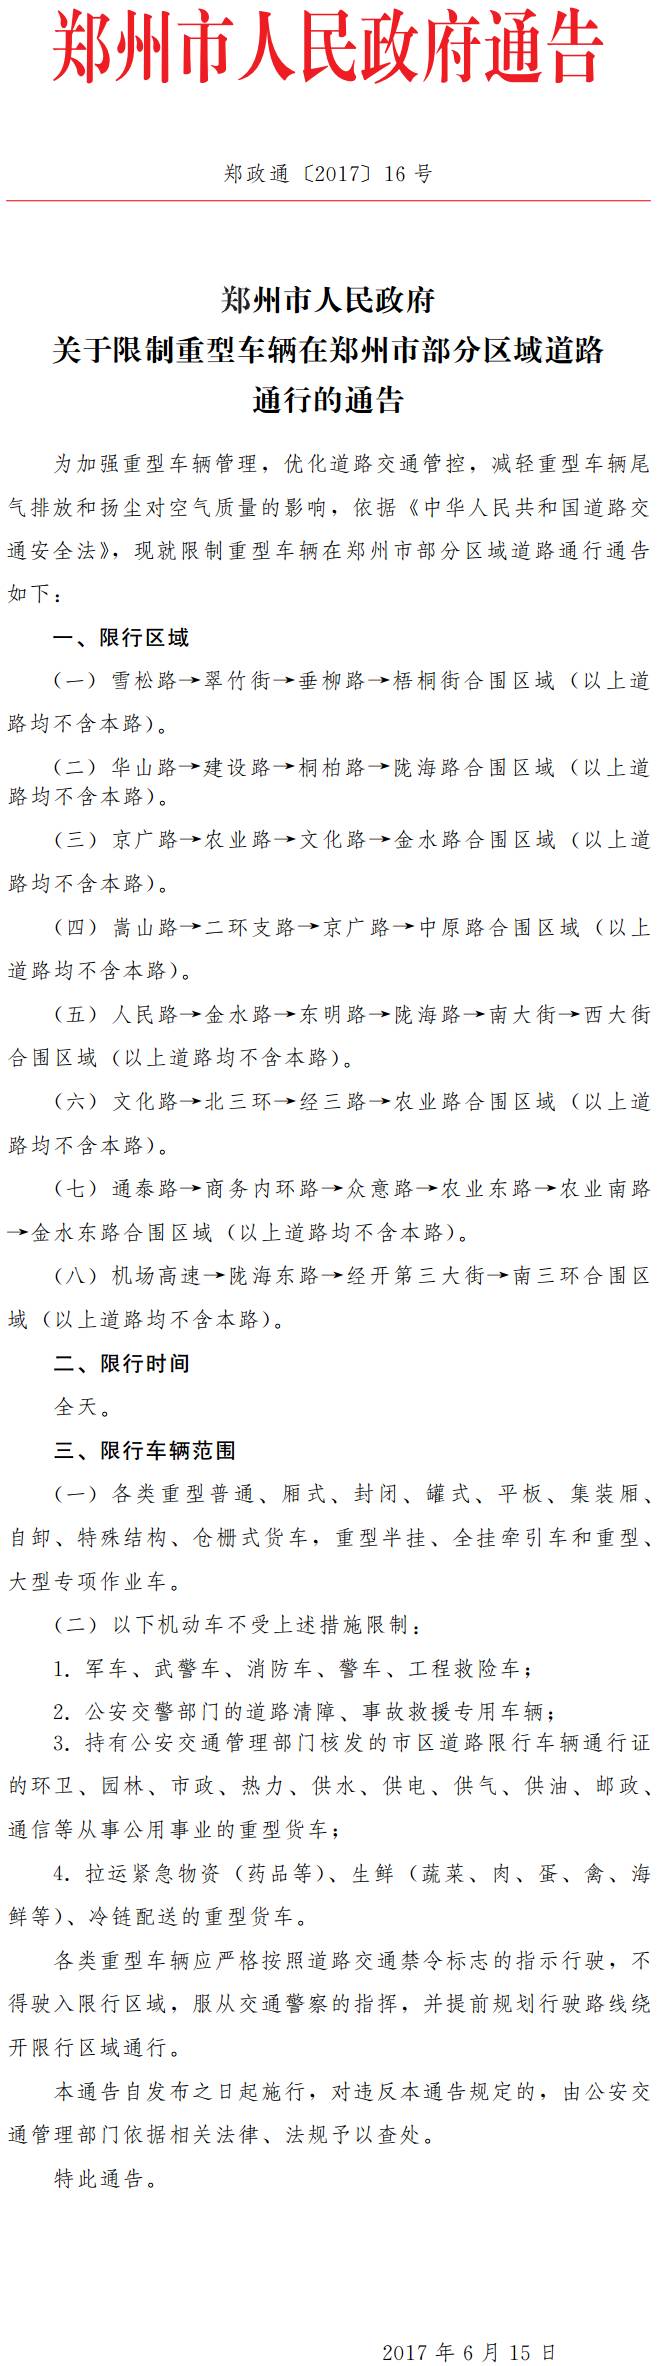 郑政通〔2017〕16号《郑州市人民政府关于限制重型车辆在郑州市部分区域道路通行的通告》